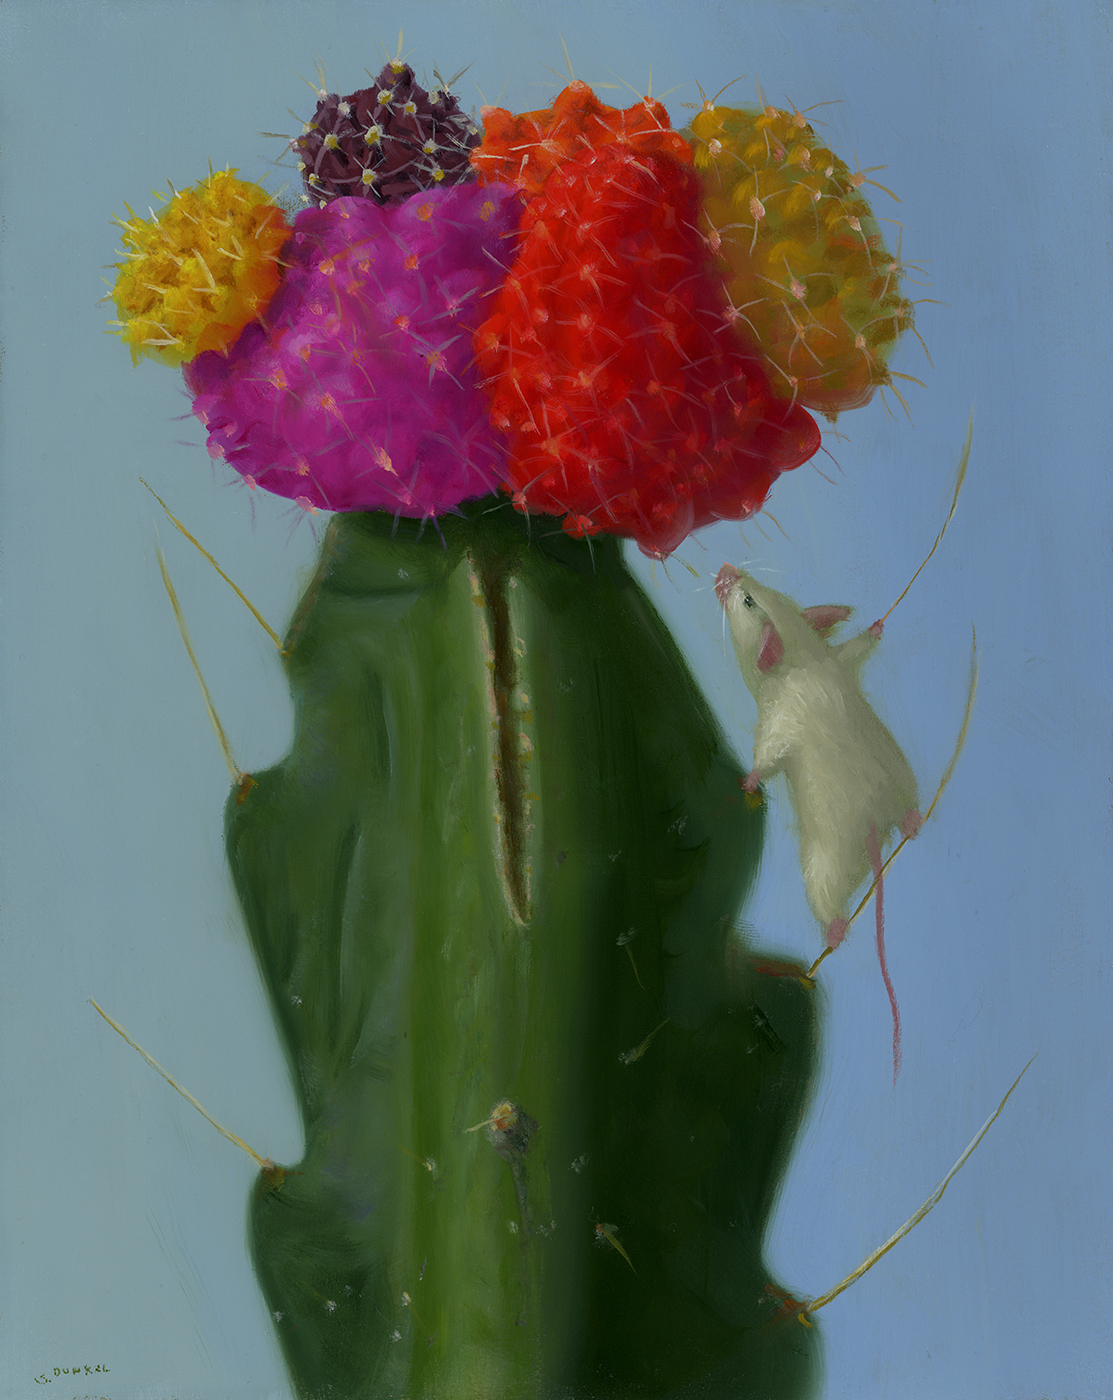 Cactus Climber - Dunkel, Stuart